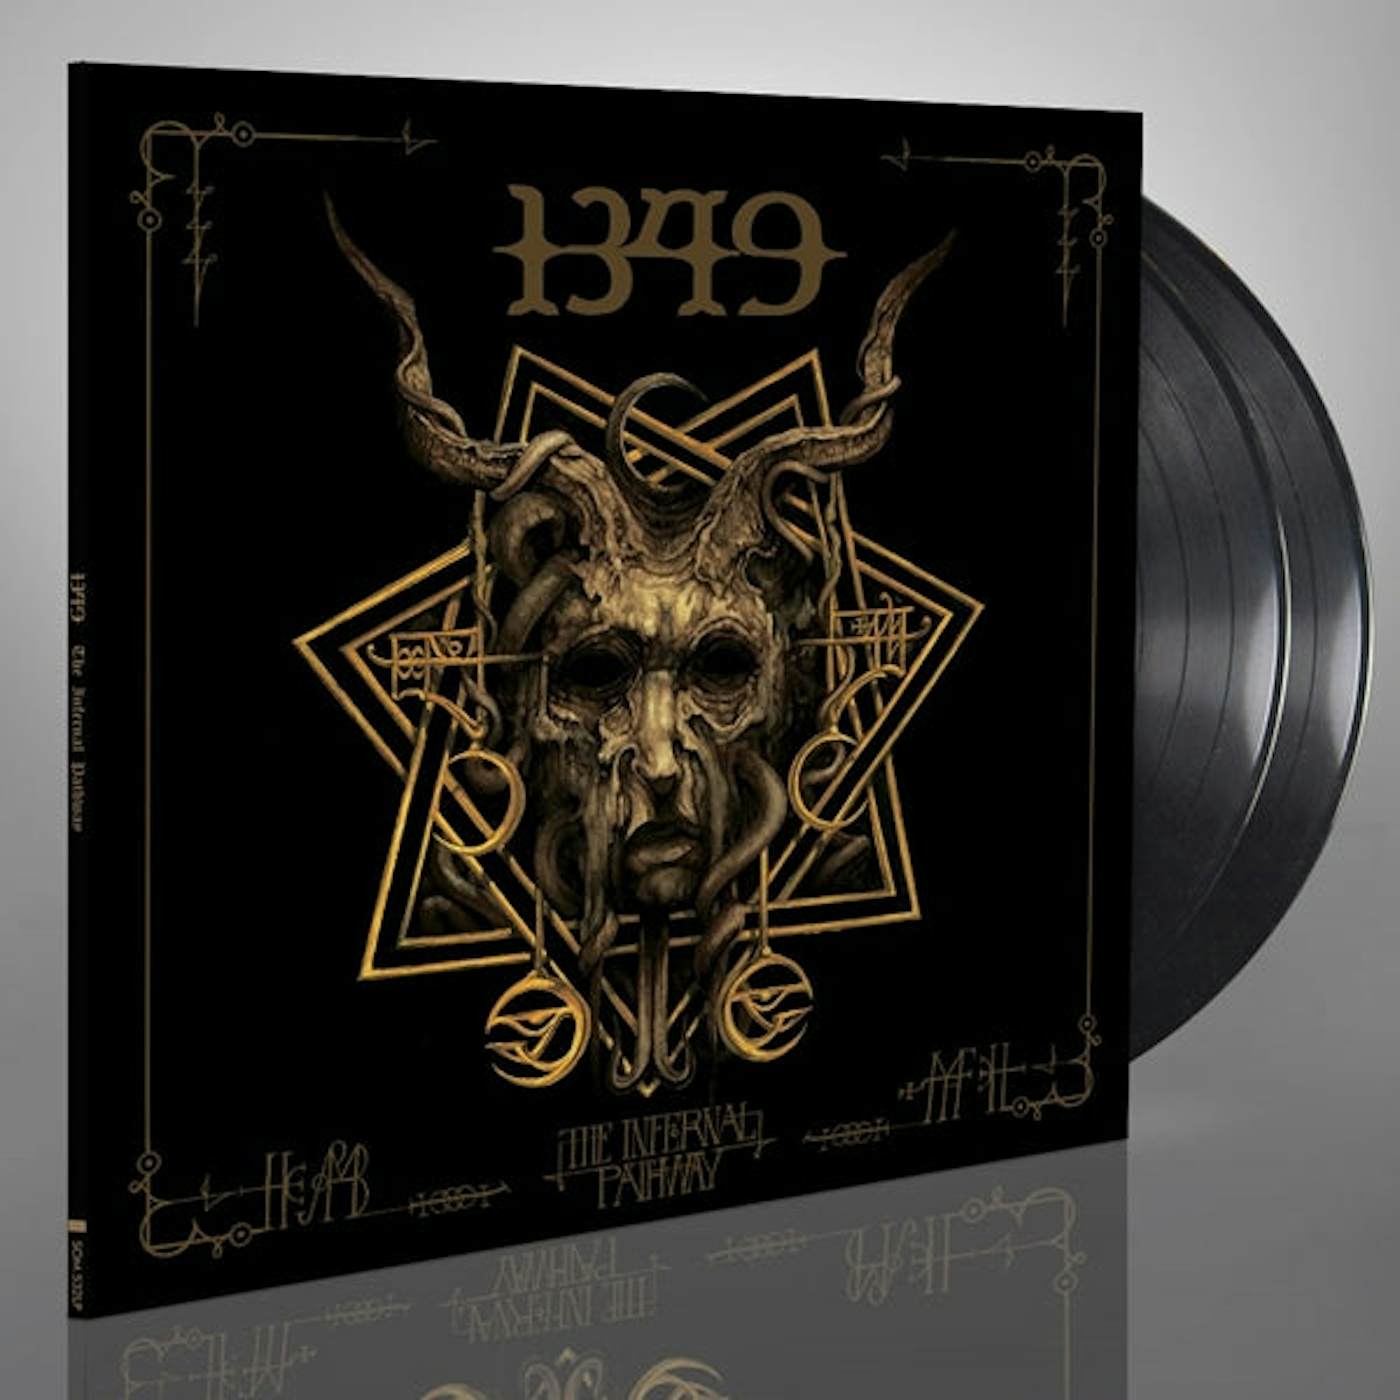 1349 LP - The Infernal Pathway (Vinyl)